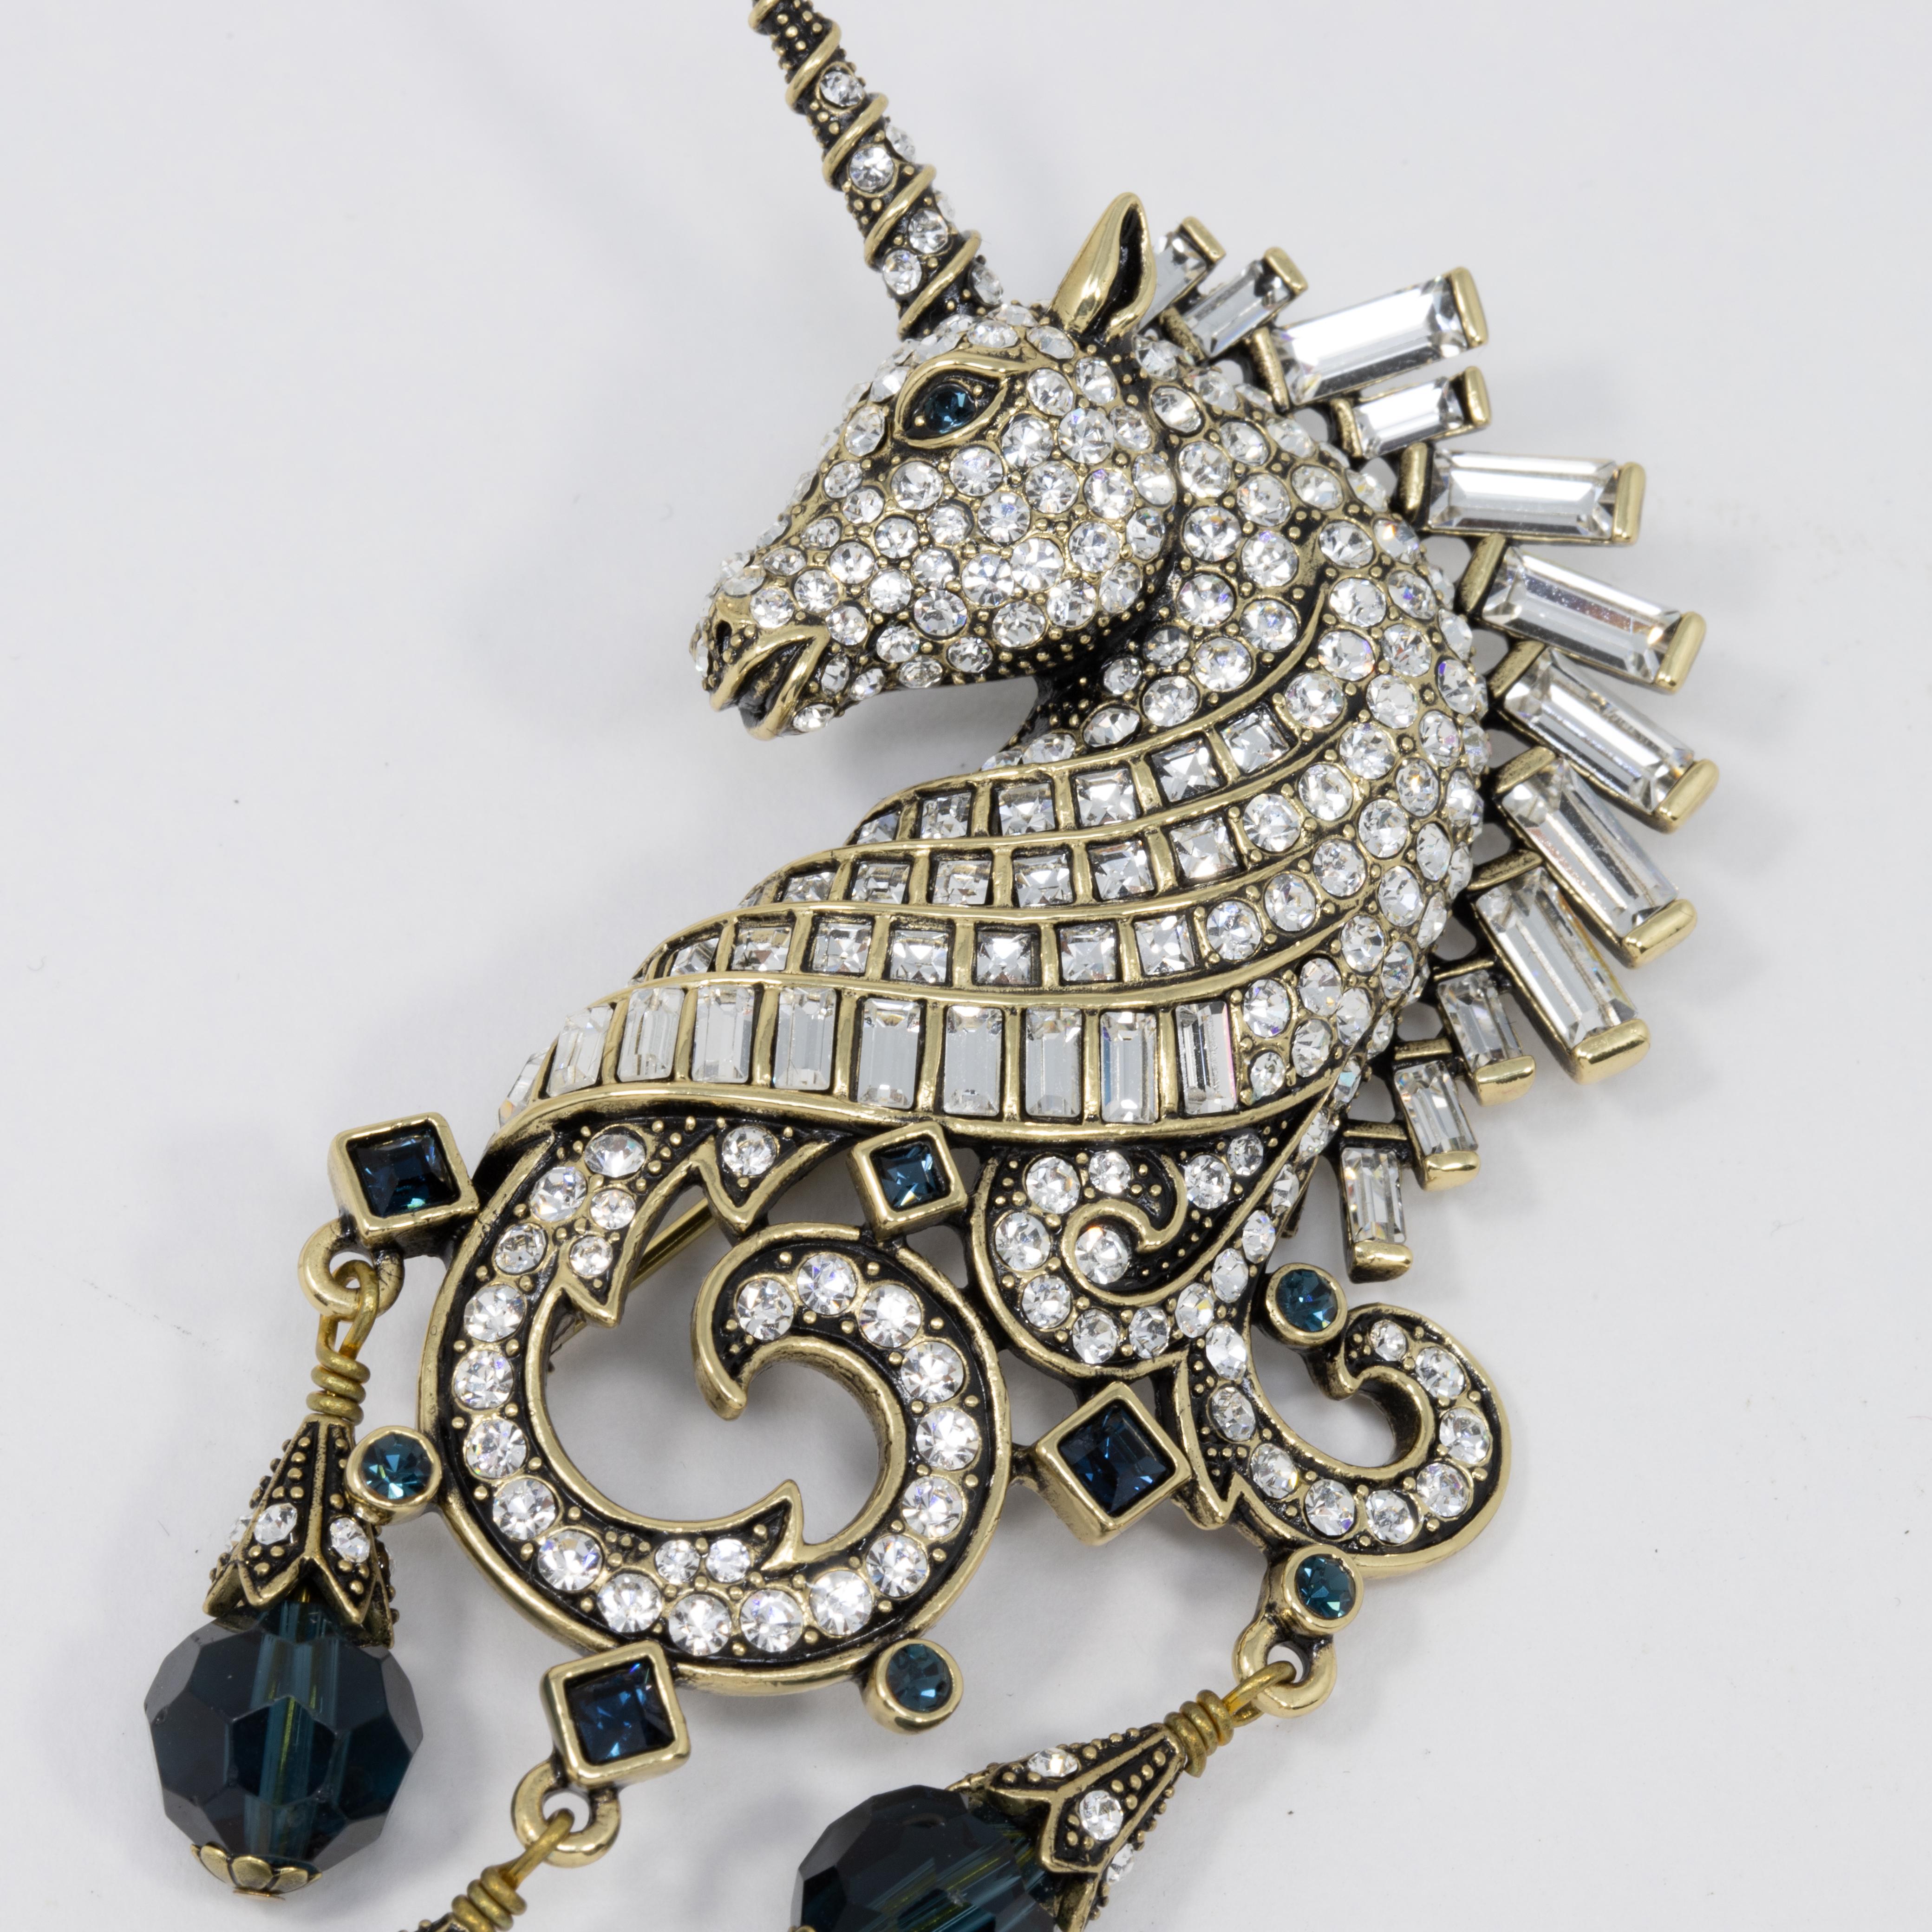 Broche licorne ornée de Heidi Daus. La tête de la licorne est décorée d'éblouissants cristaux clairs, sertis dans un métal doré.

Poinçons : Heidi Daus, Chine

